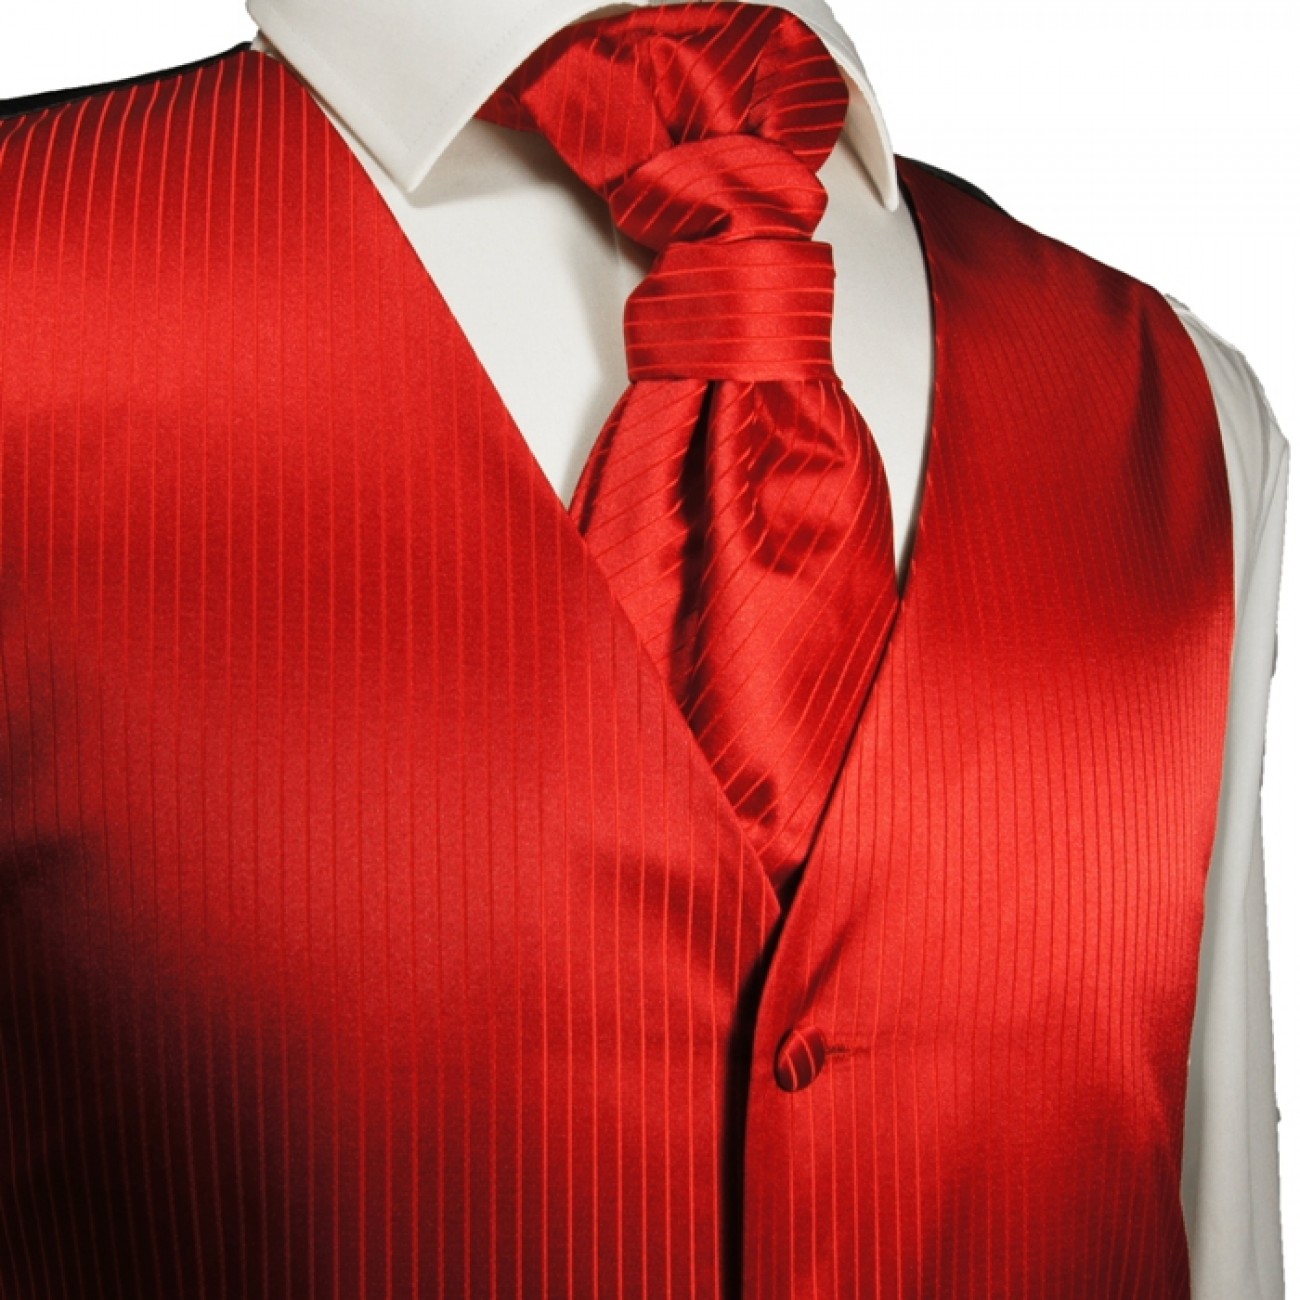 Rote Hochzeitsweste mit Plastron Krawatte Einstecktuch und Manschettenknöpfen v24